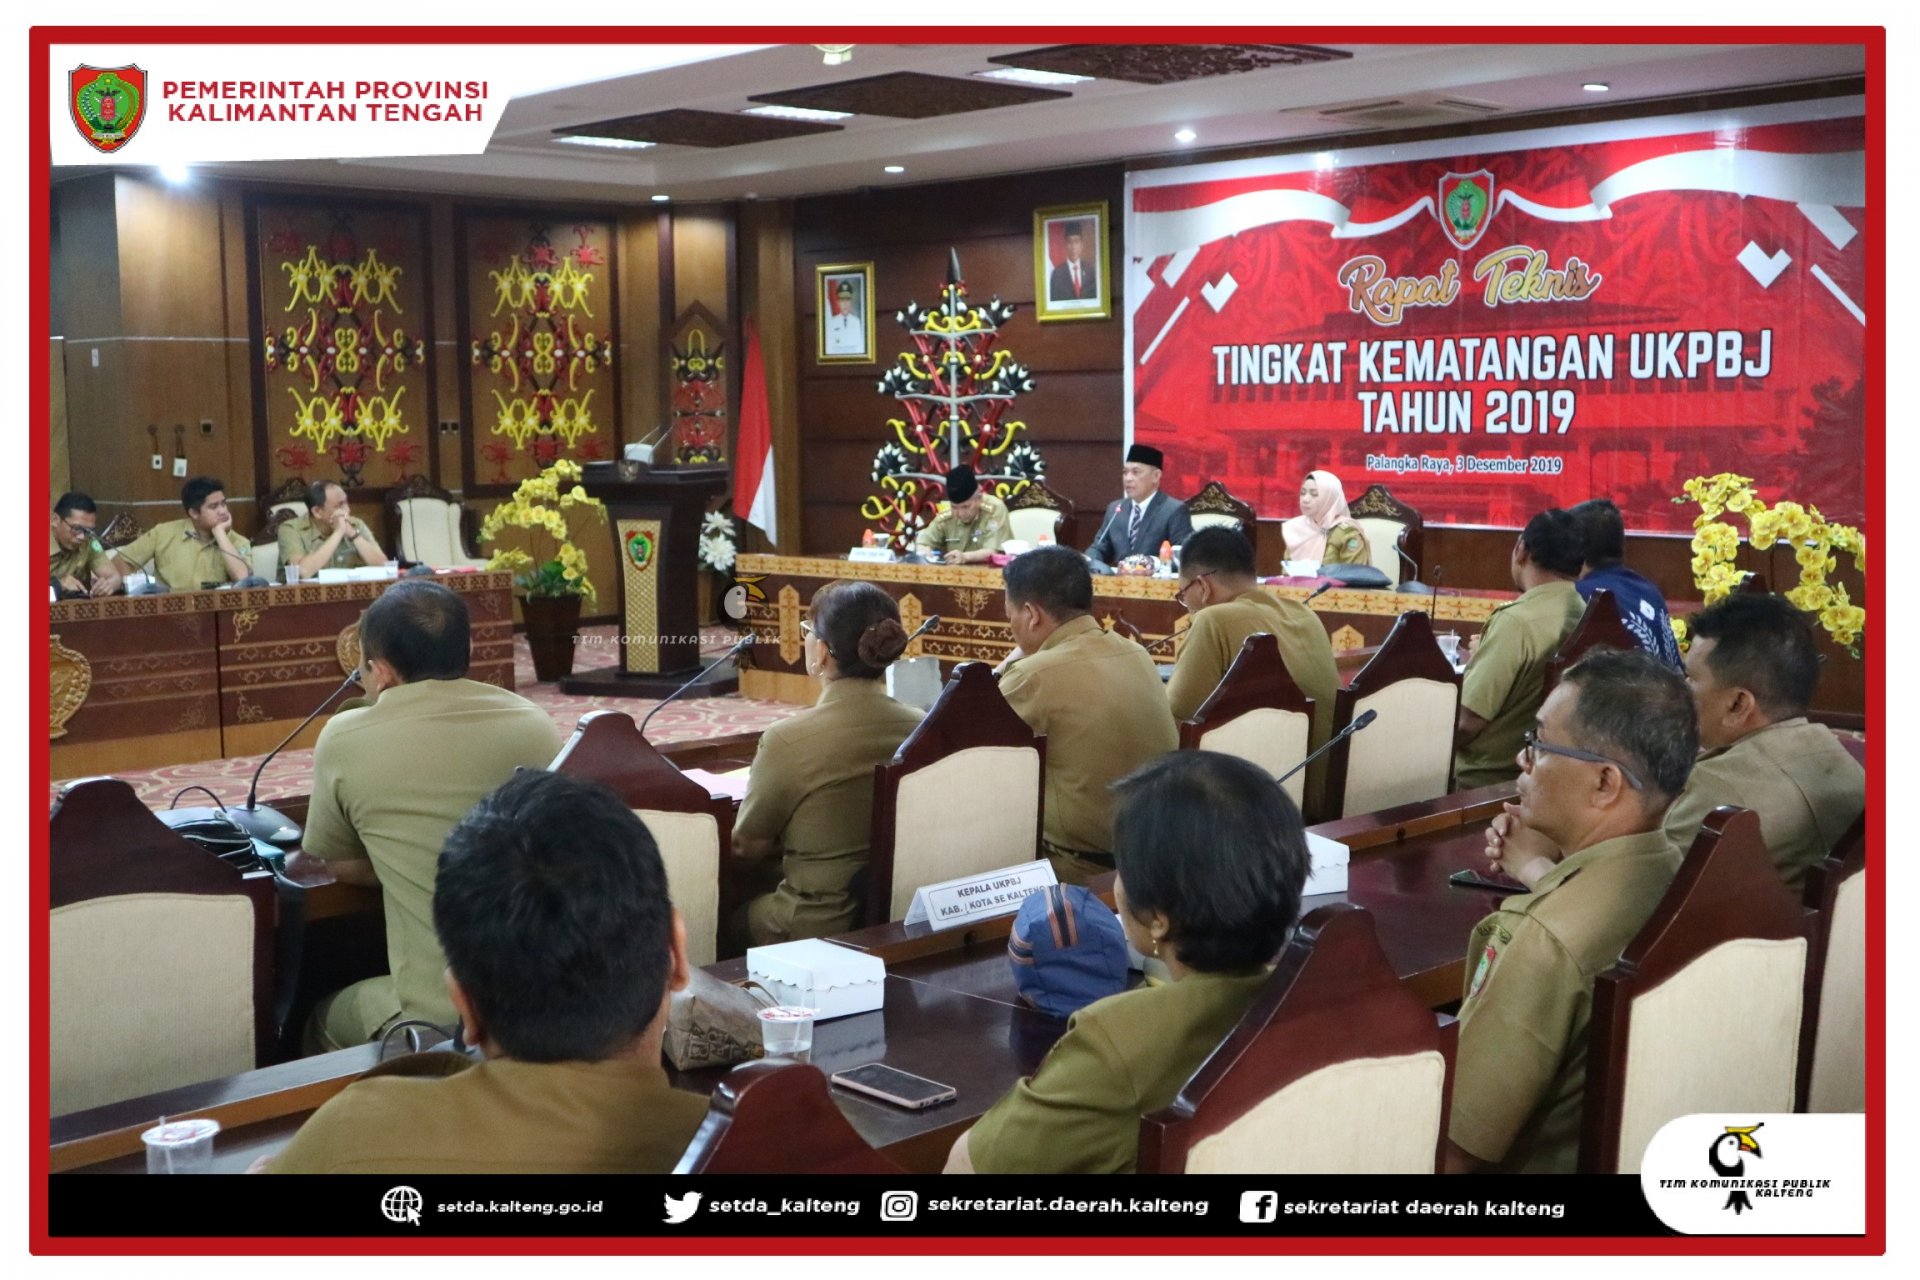 Rapat Teknis Tingkat Kematangan UKPBJ Provinsi Kalimantan Tengah Tahun 2019